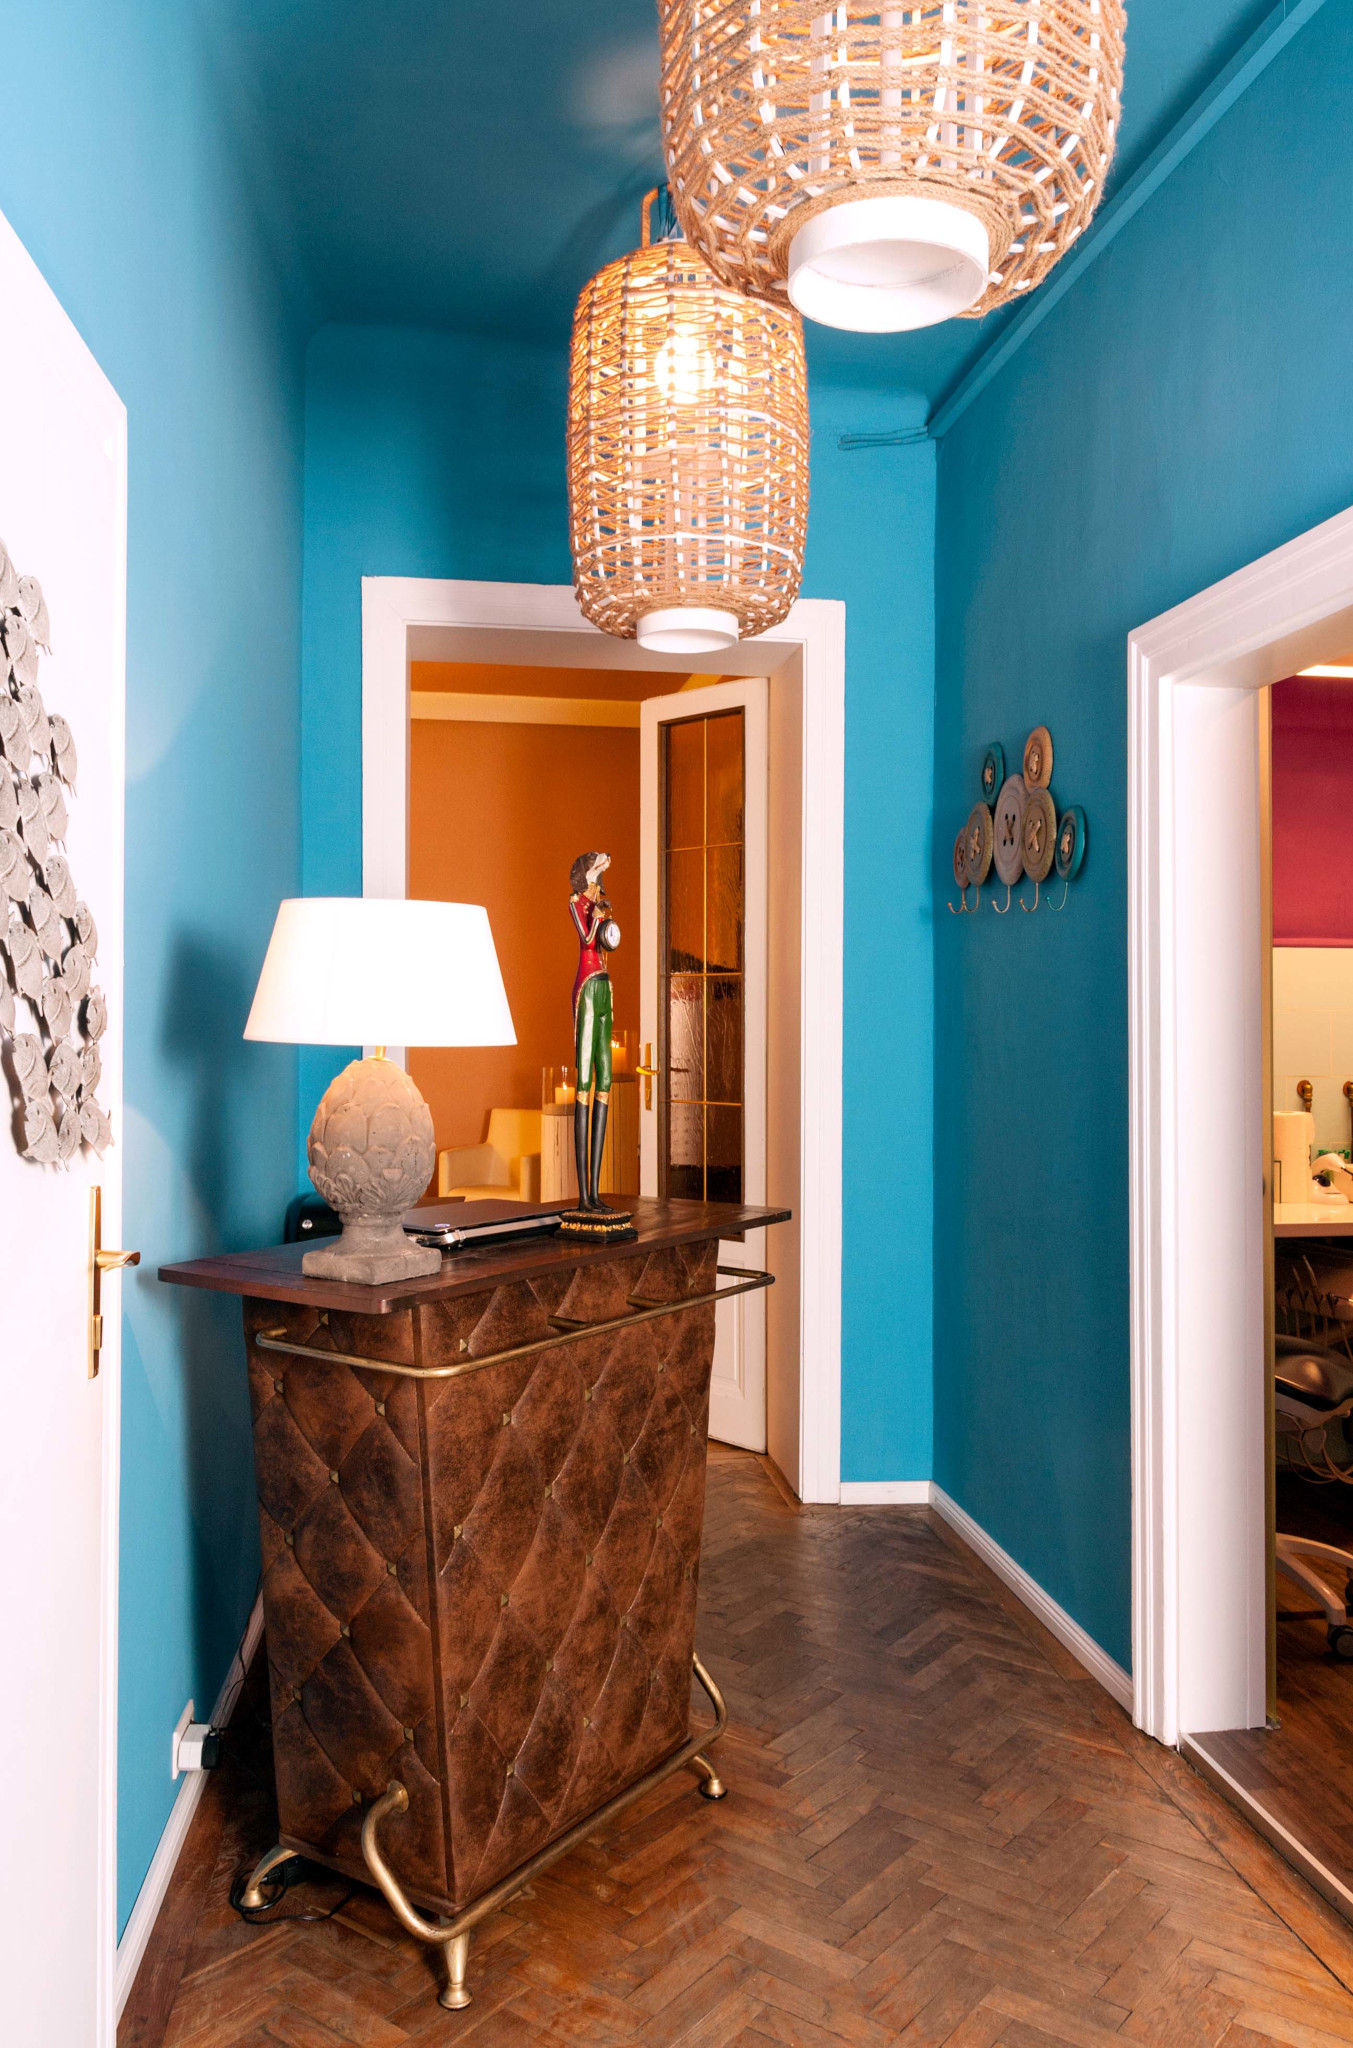 Eingerichtet mit lederbezogenem Empfangstresen, blauer Wandfarbe, Parkettboden, Garderobenhaken und ovalen Lampen mit dickem Garn als Schirm.